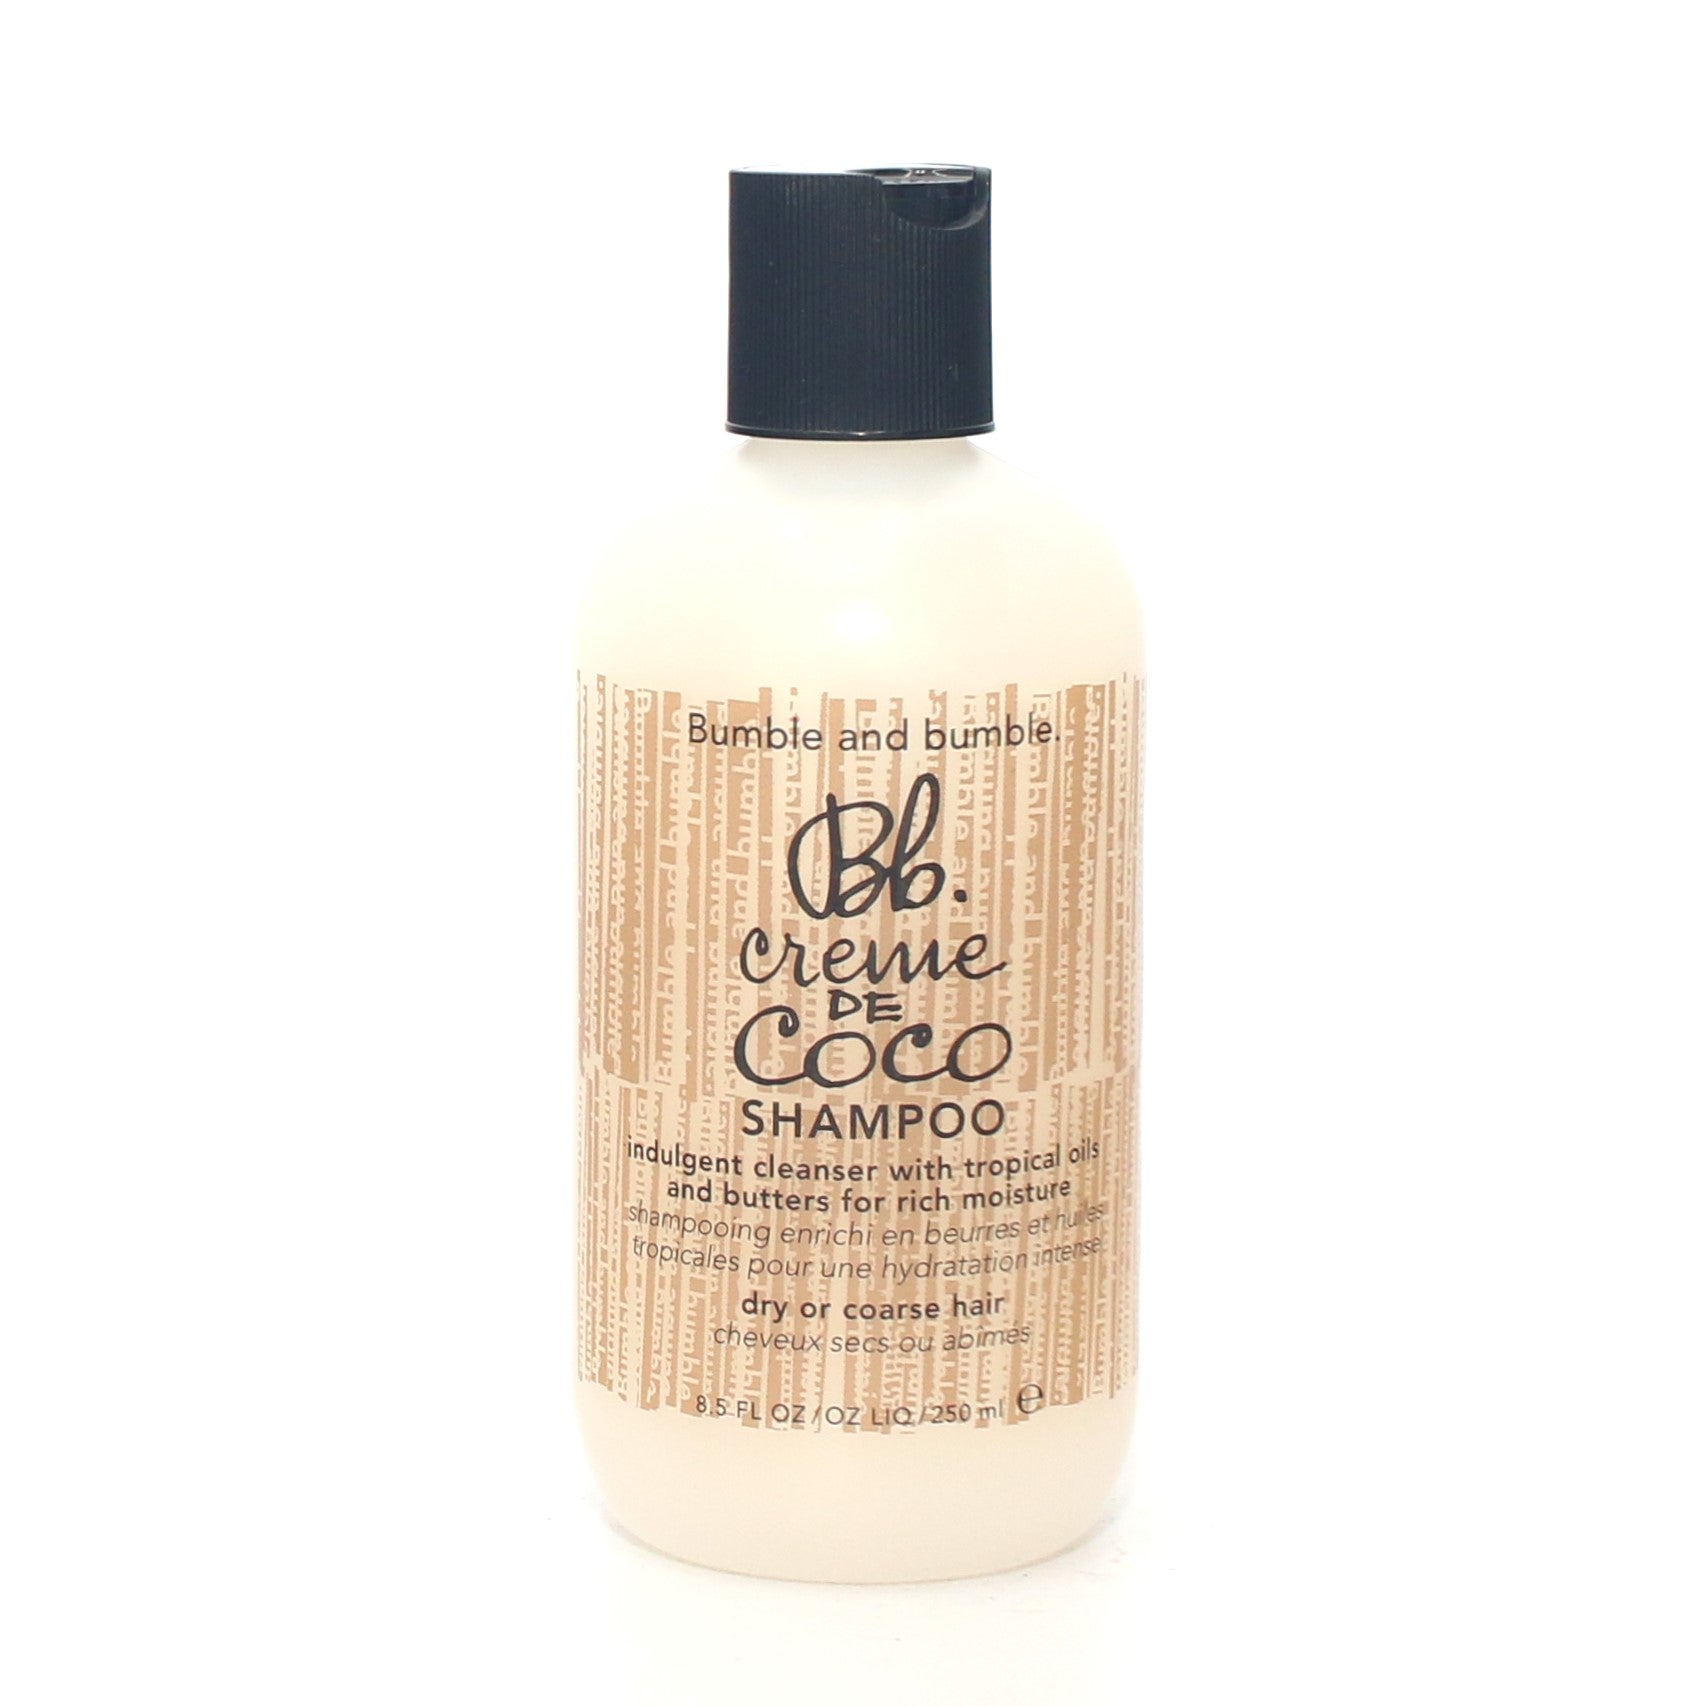 Bumble and Bumble Bb Creme De Coco Shampoo 8.5 oz